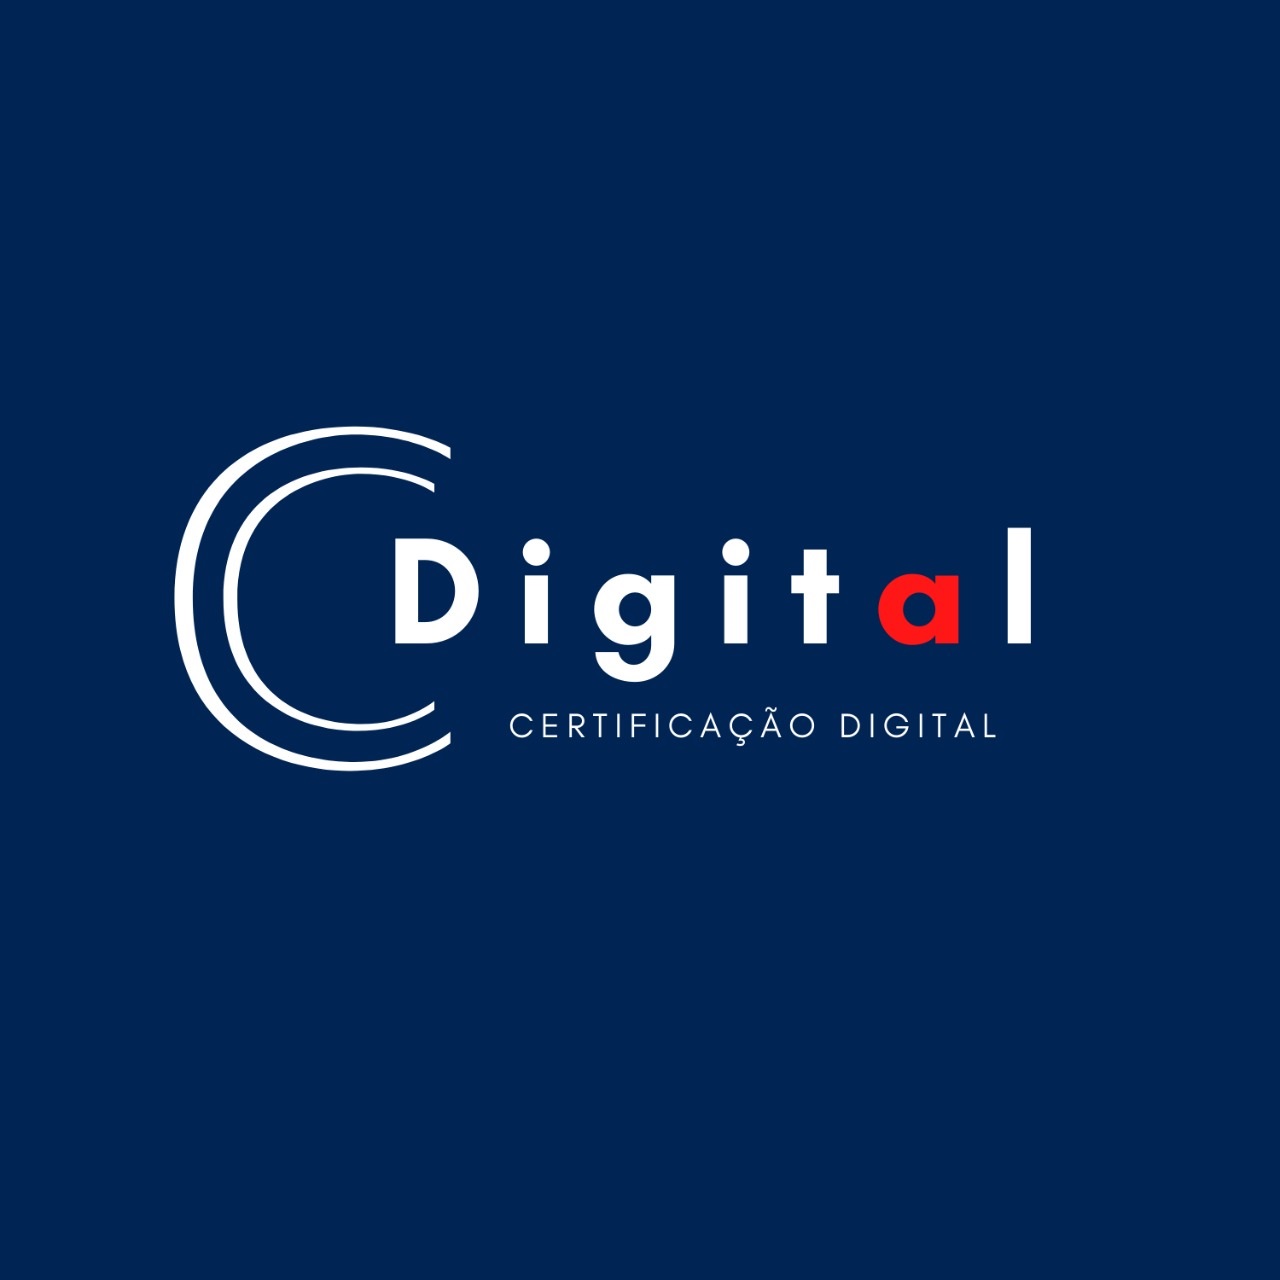 Logotipo do parceiro AR Cdigital &#8211; DKONTÁBIL &#8211; 15%